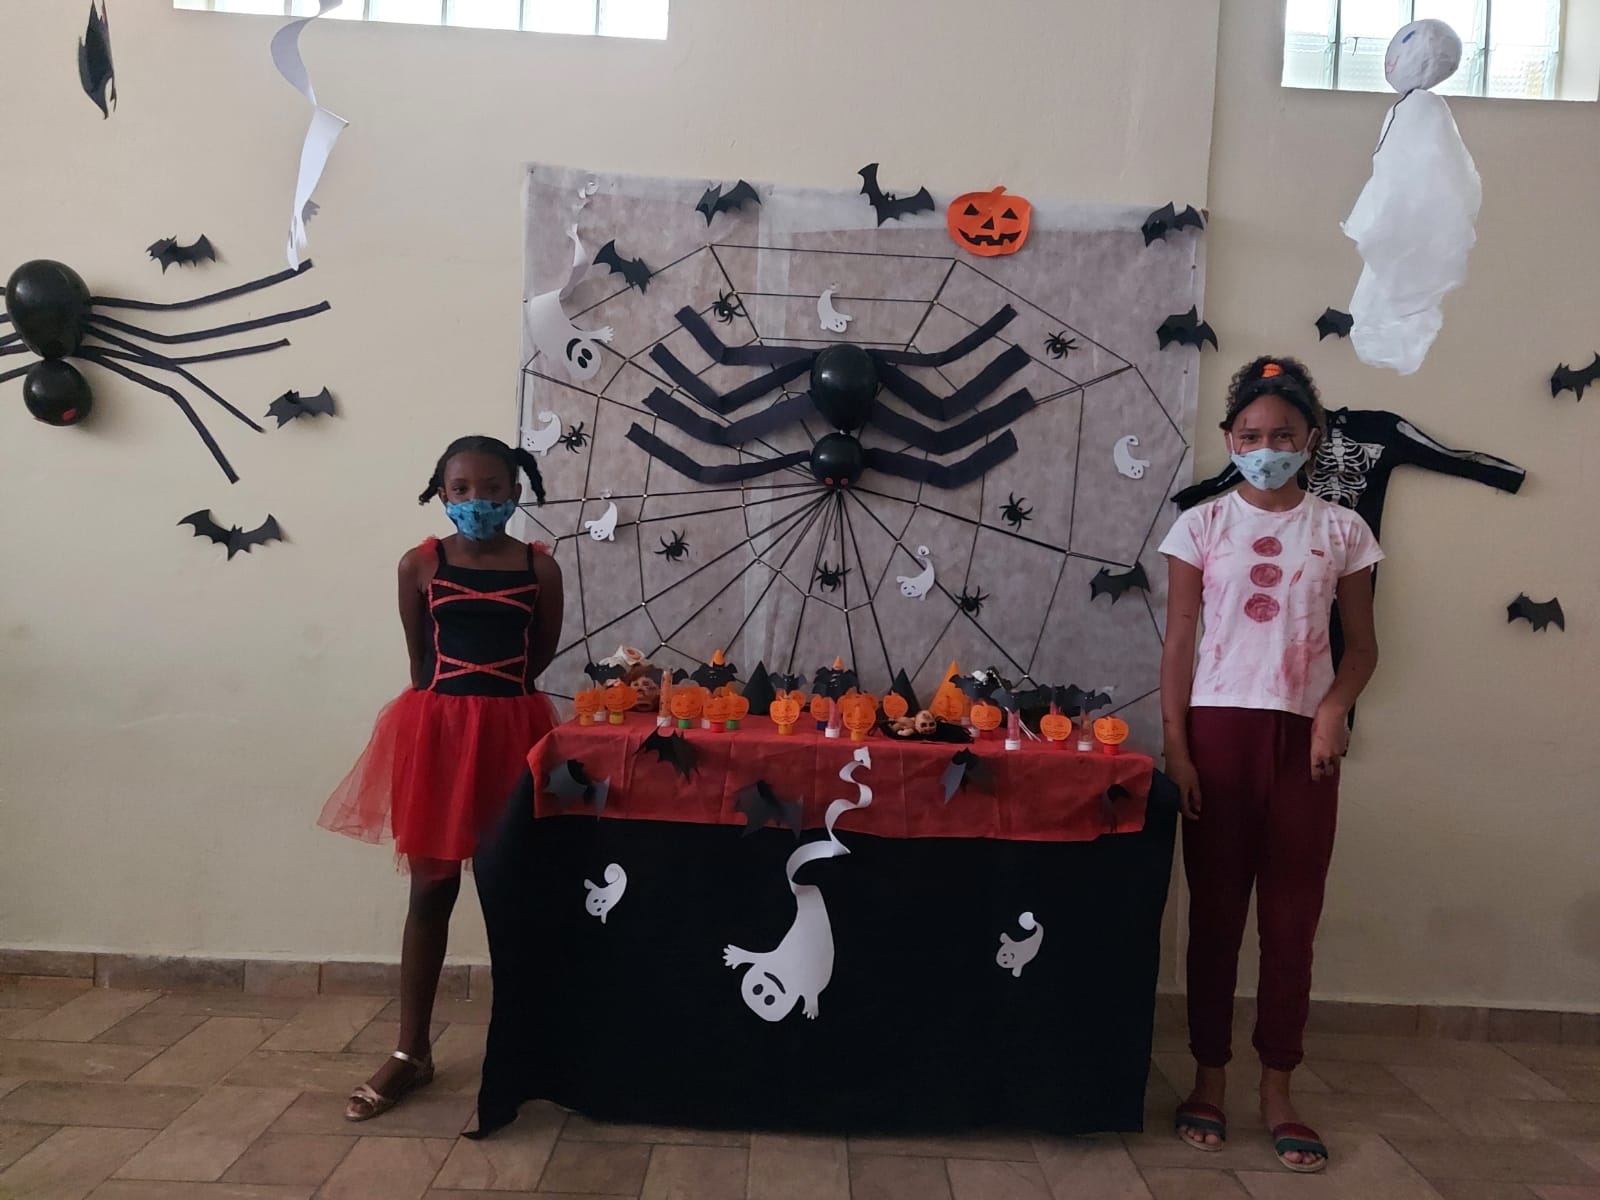 Duas crianças posam para foto com a mesa e o mural, decorados com apetrechos comemorativos e temáticos do Dia das Bruxas, como fantasmas, aranhas, abóboras e morcegos.